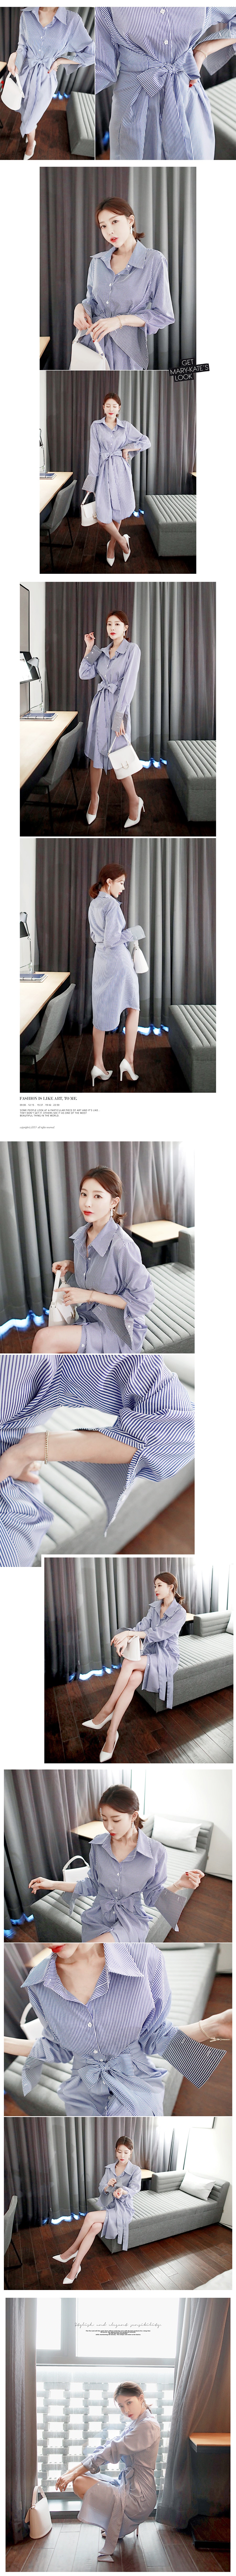 韩国正品 MAGZERO 竖条纹腰带衬衫式连身裙 #蓝色 均码(Free) [免费配送]